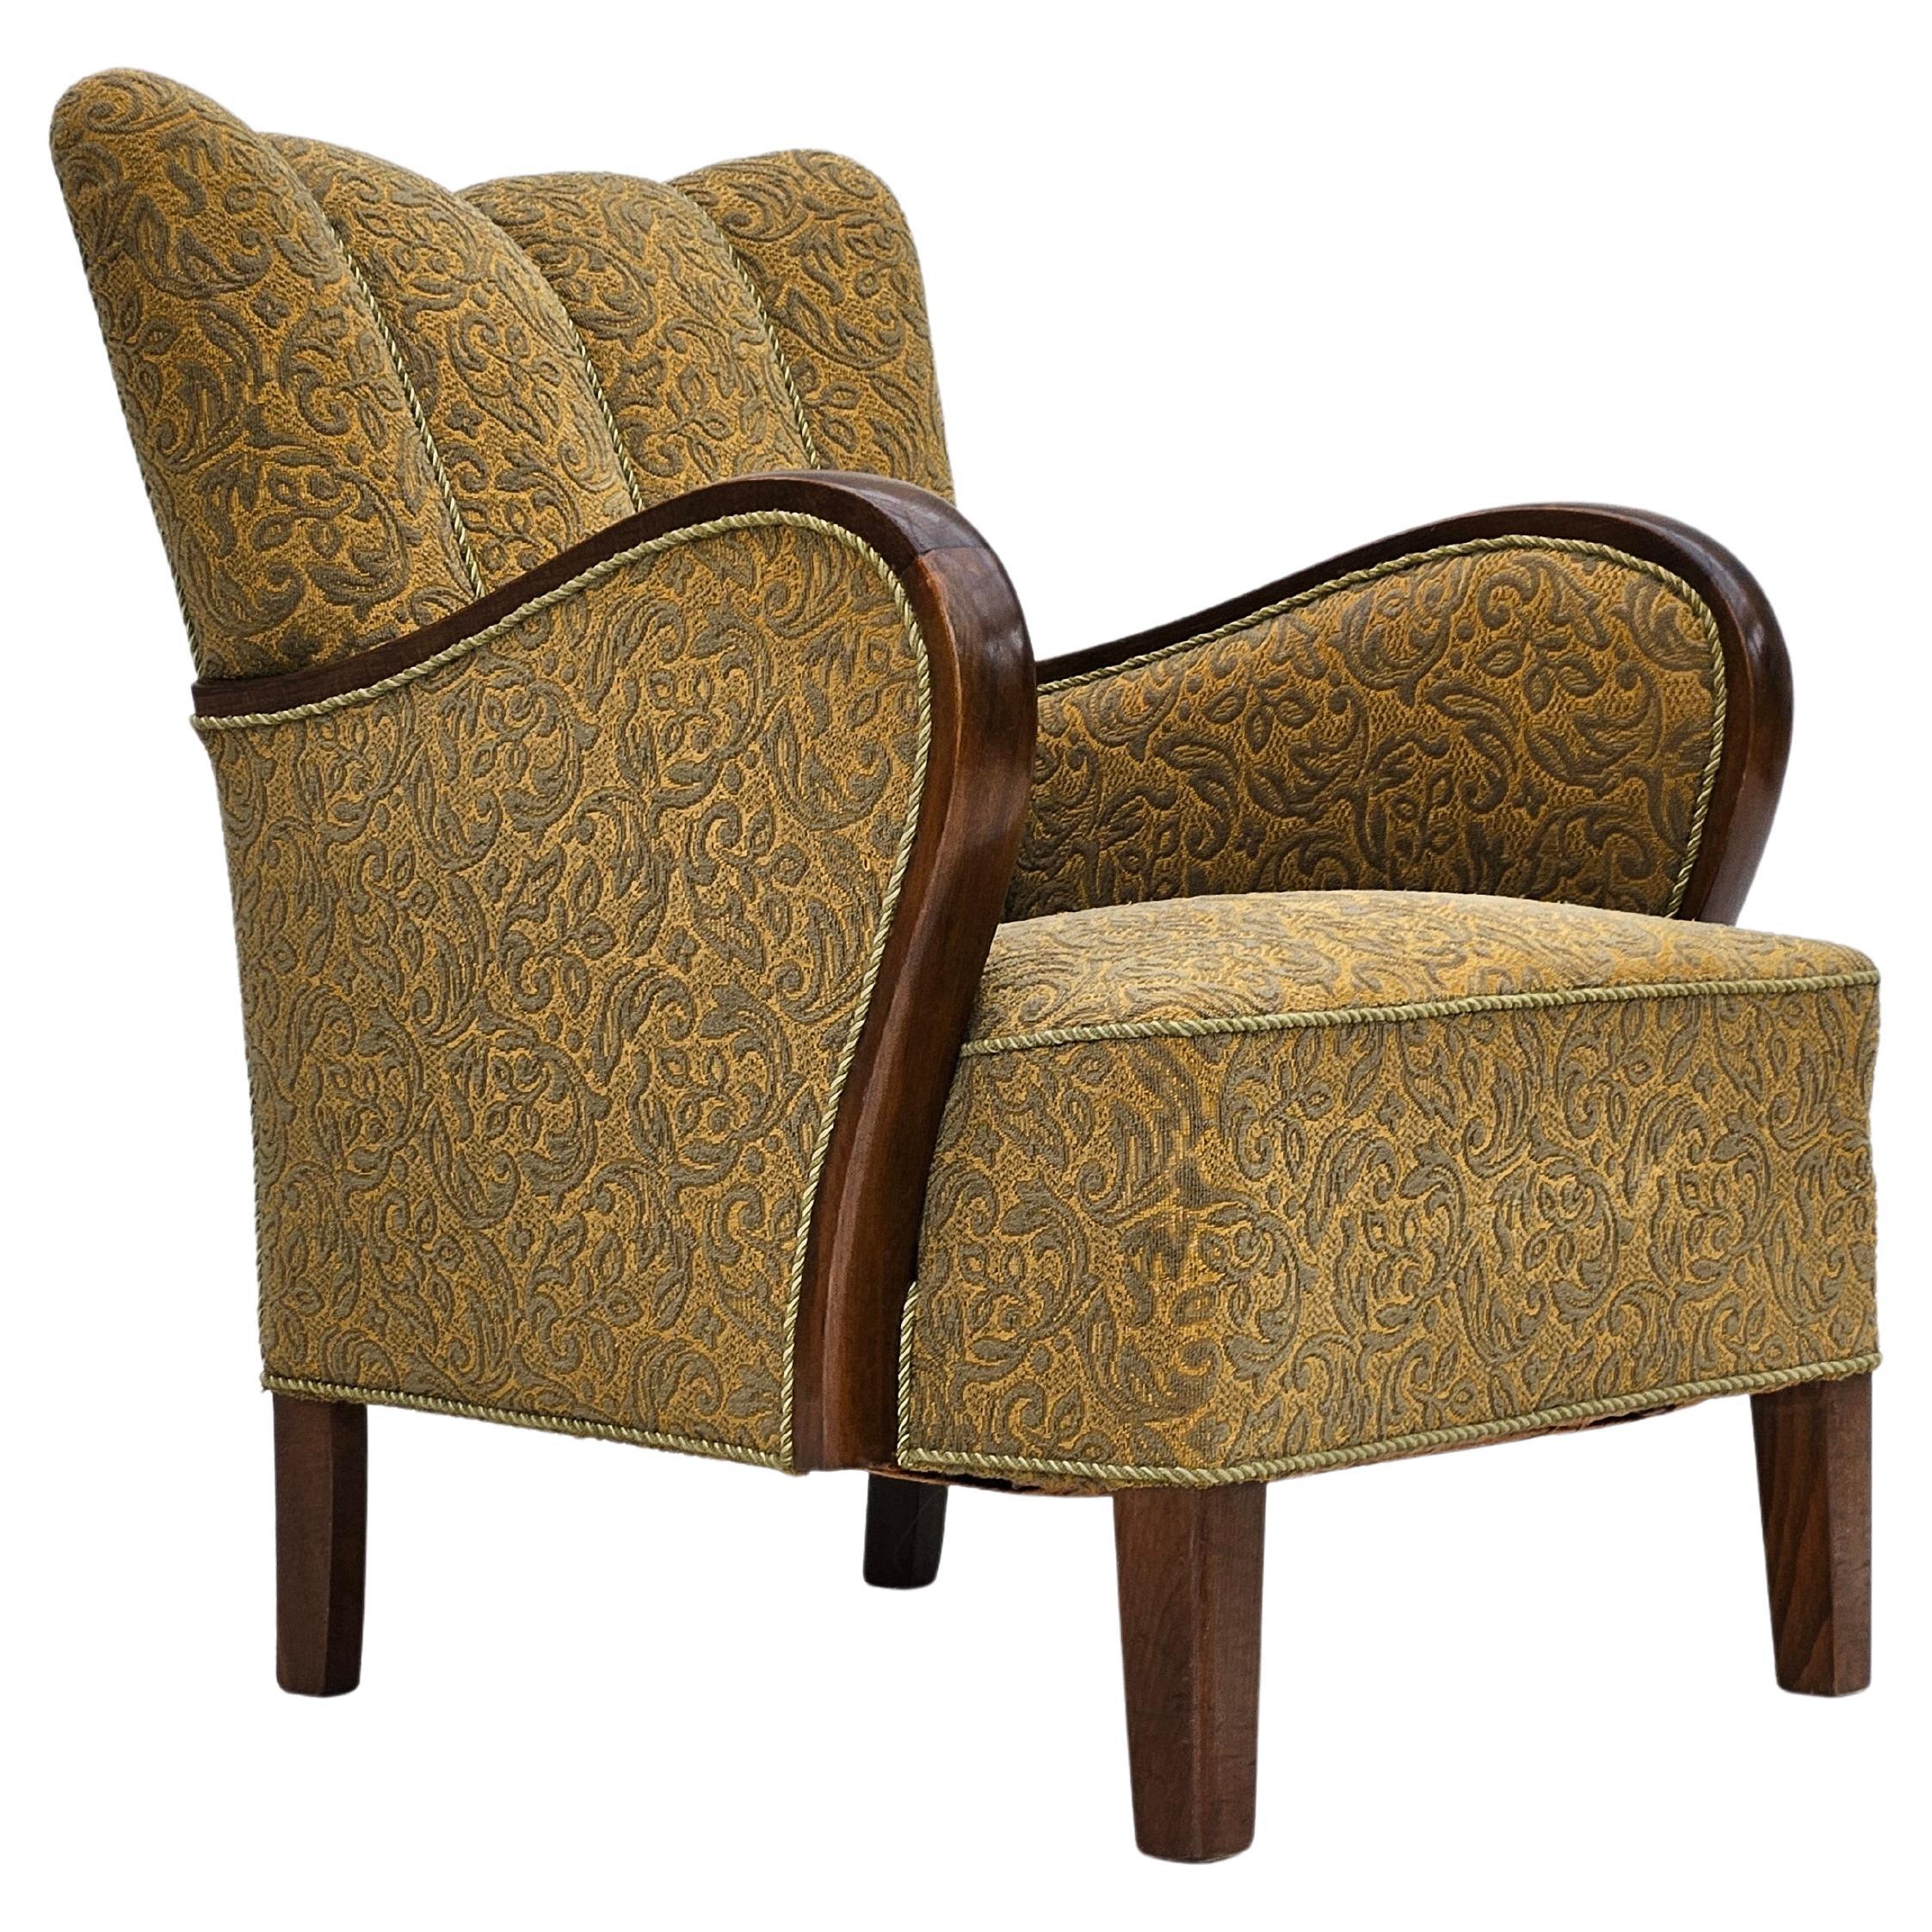 Dänisches Design, Sessel, original sehr guter Zustand, 1950–60er Jahre, dänisches Design.